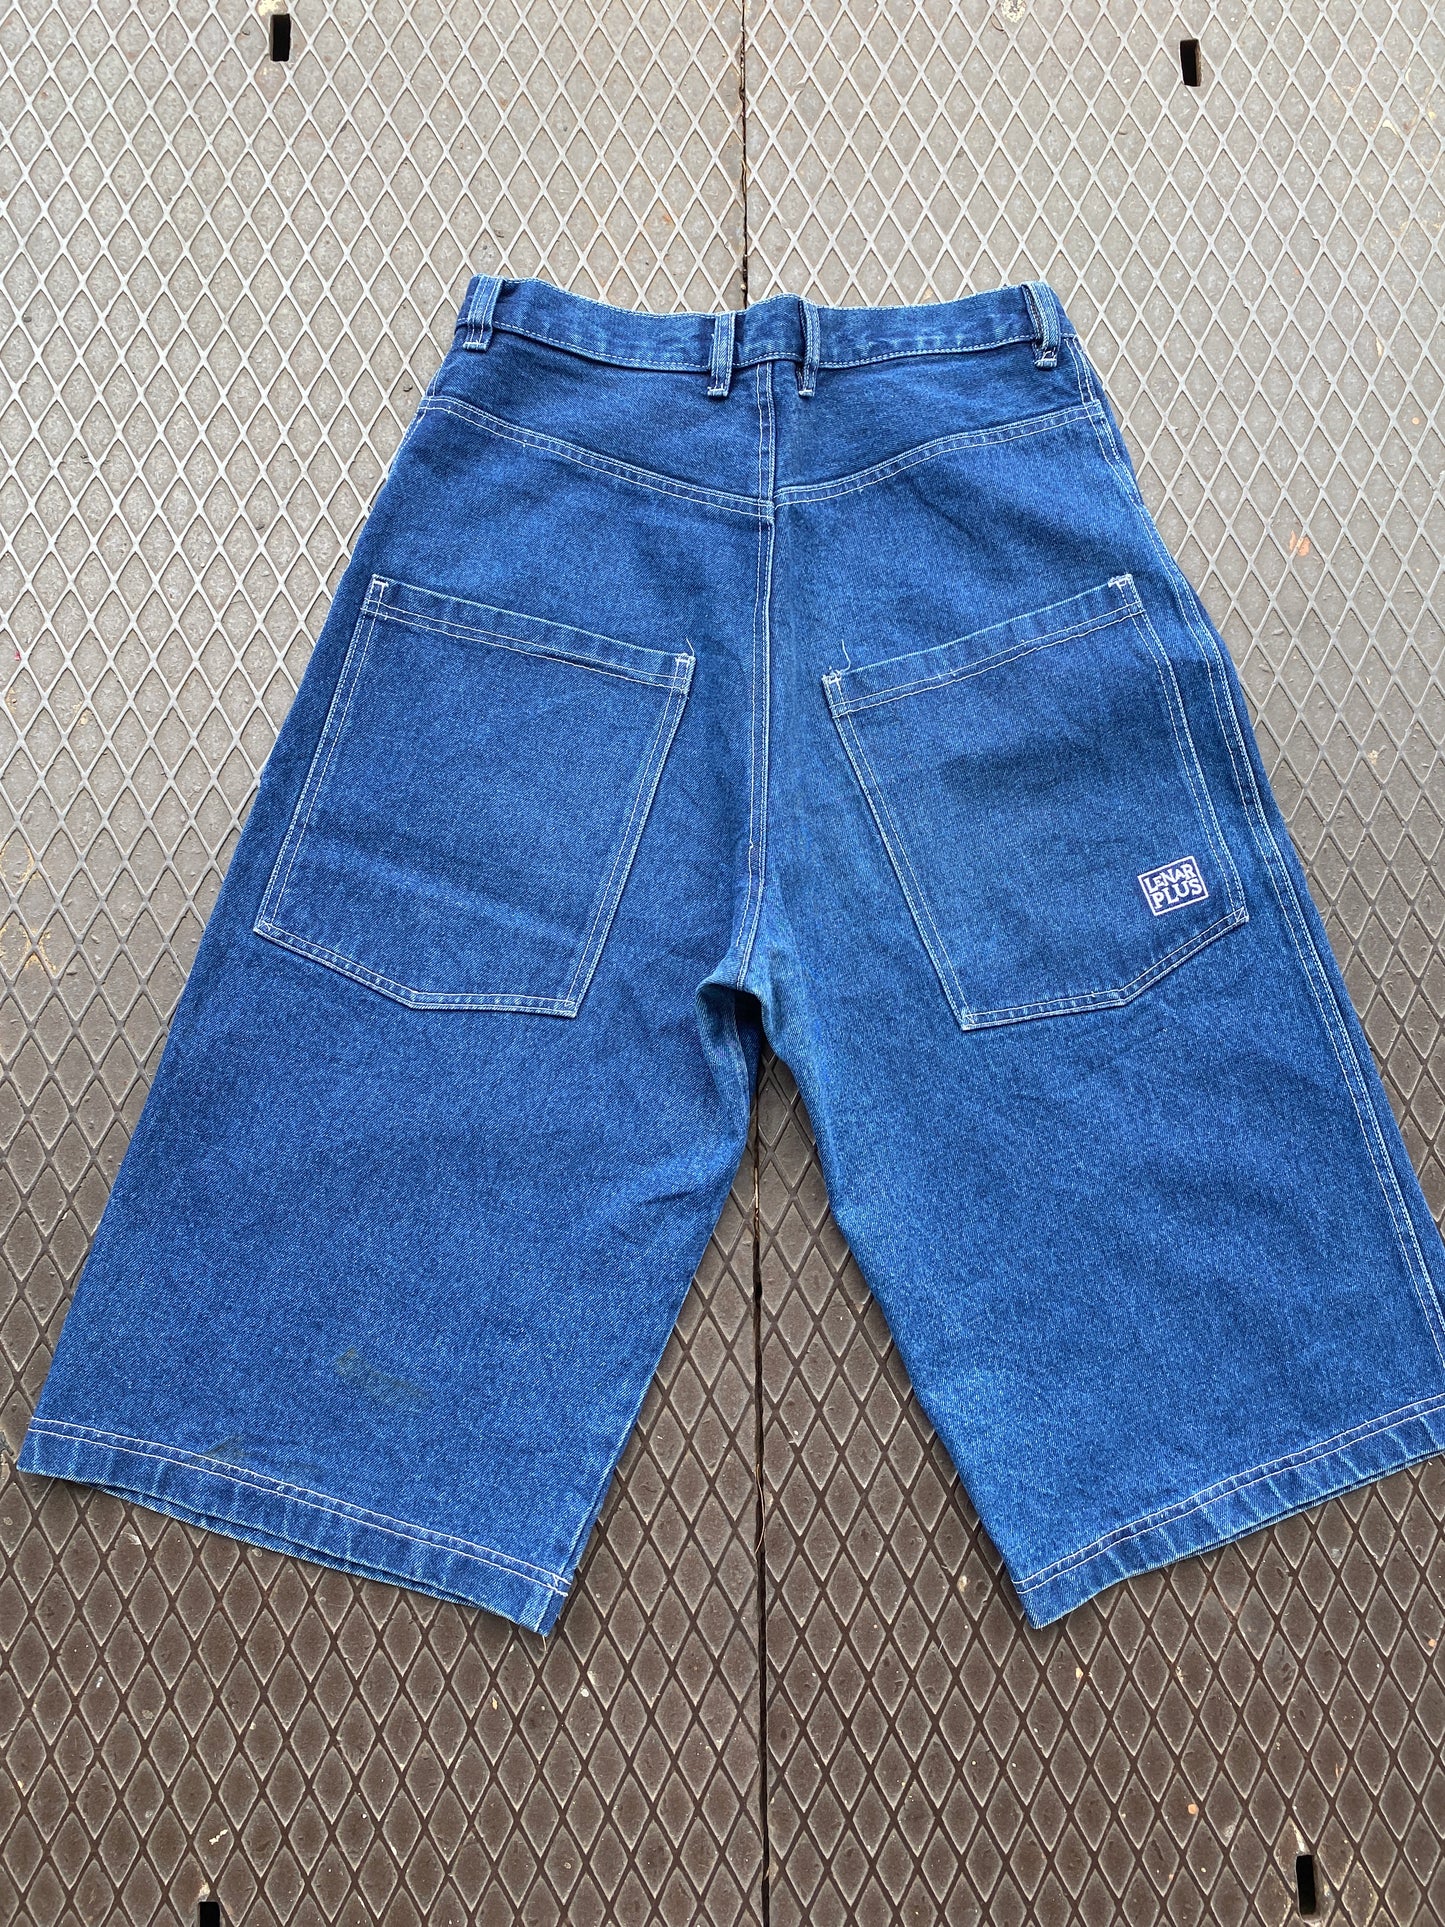 32 - Lenar Plus Blue Denim Shorts